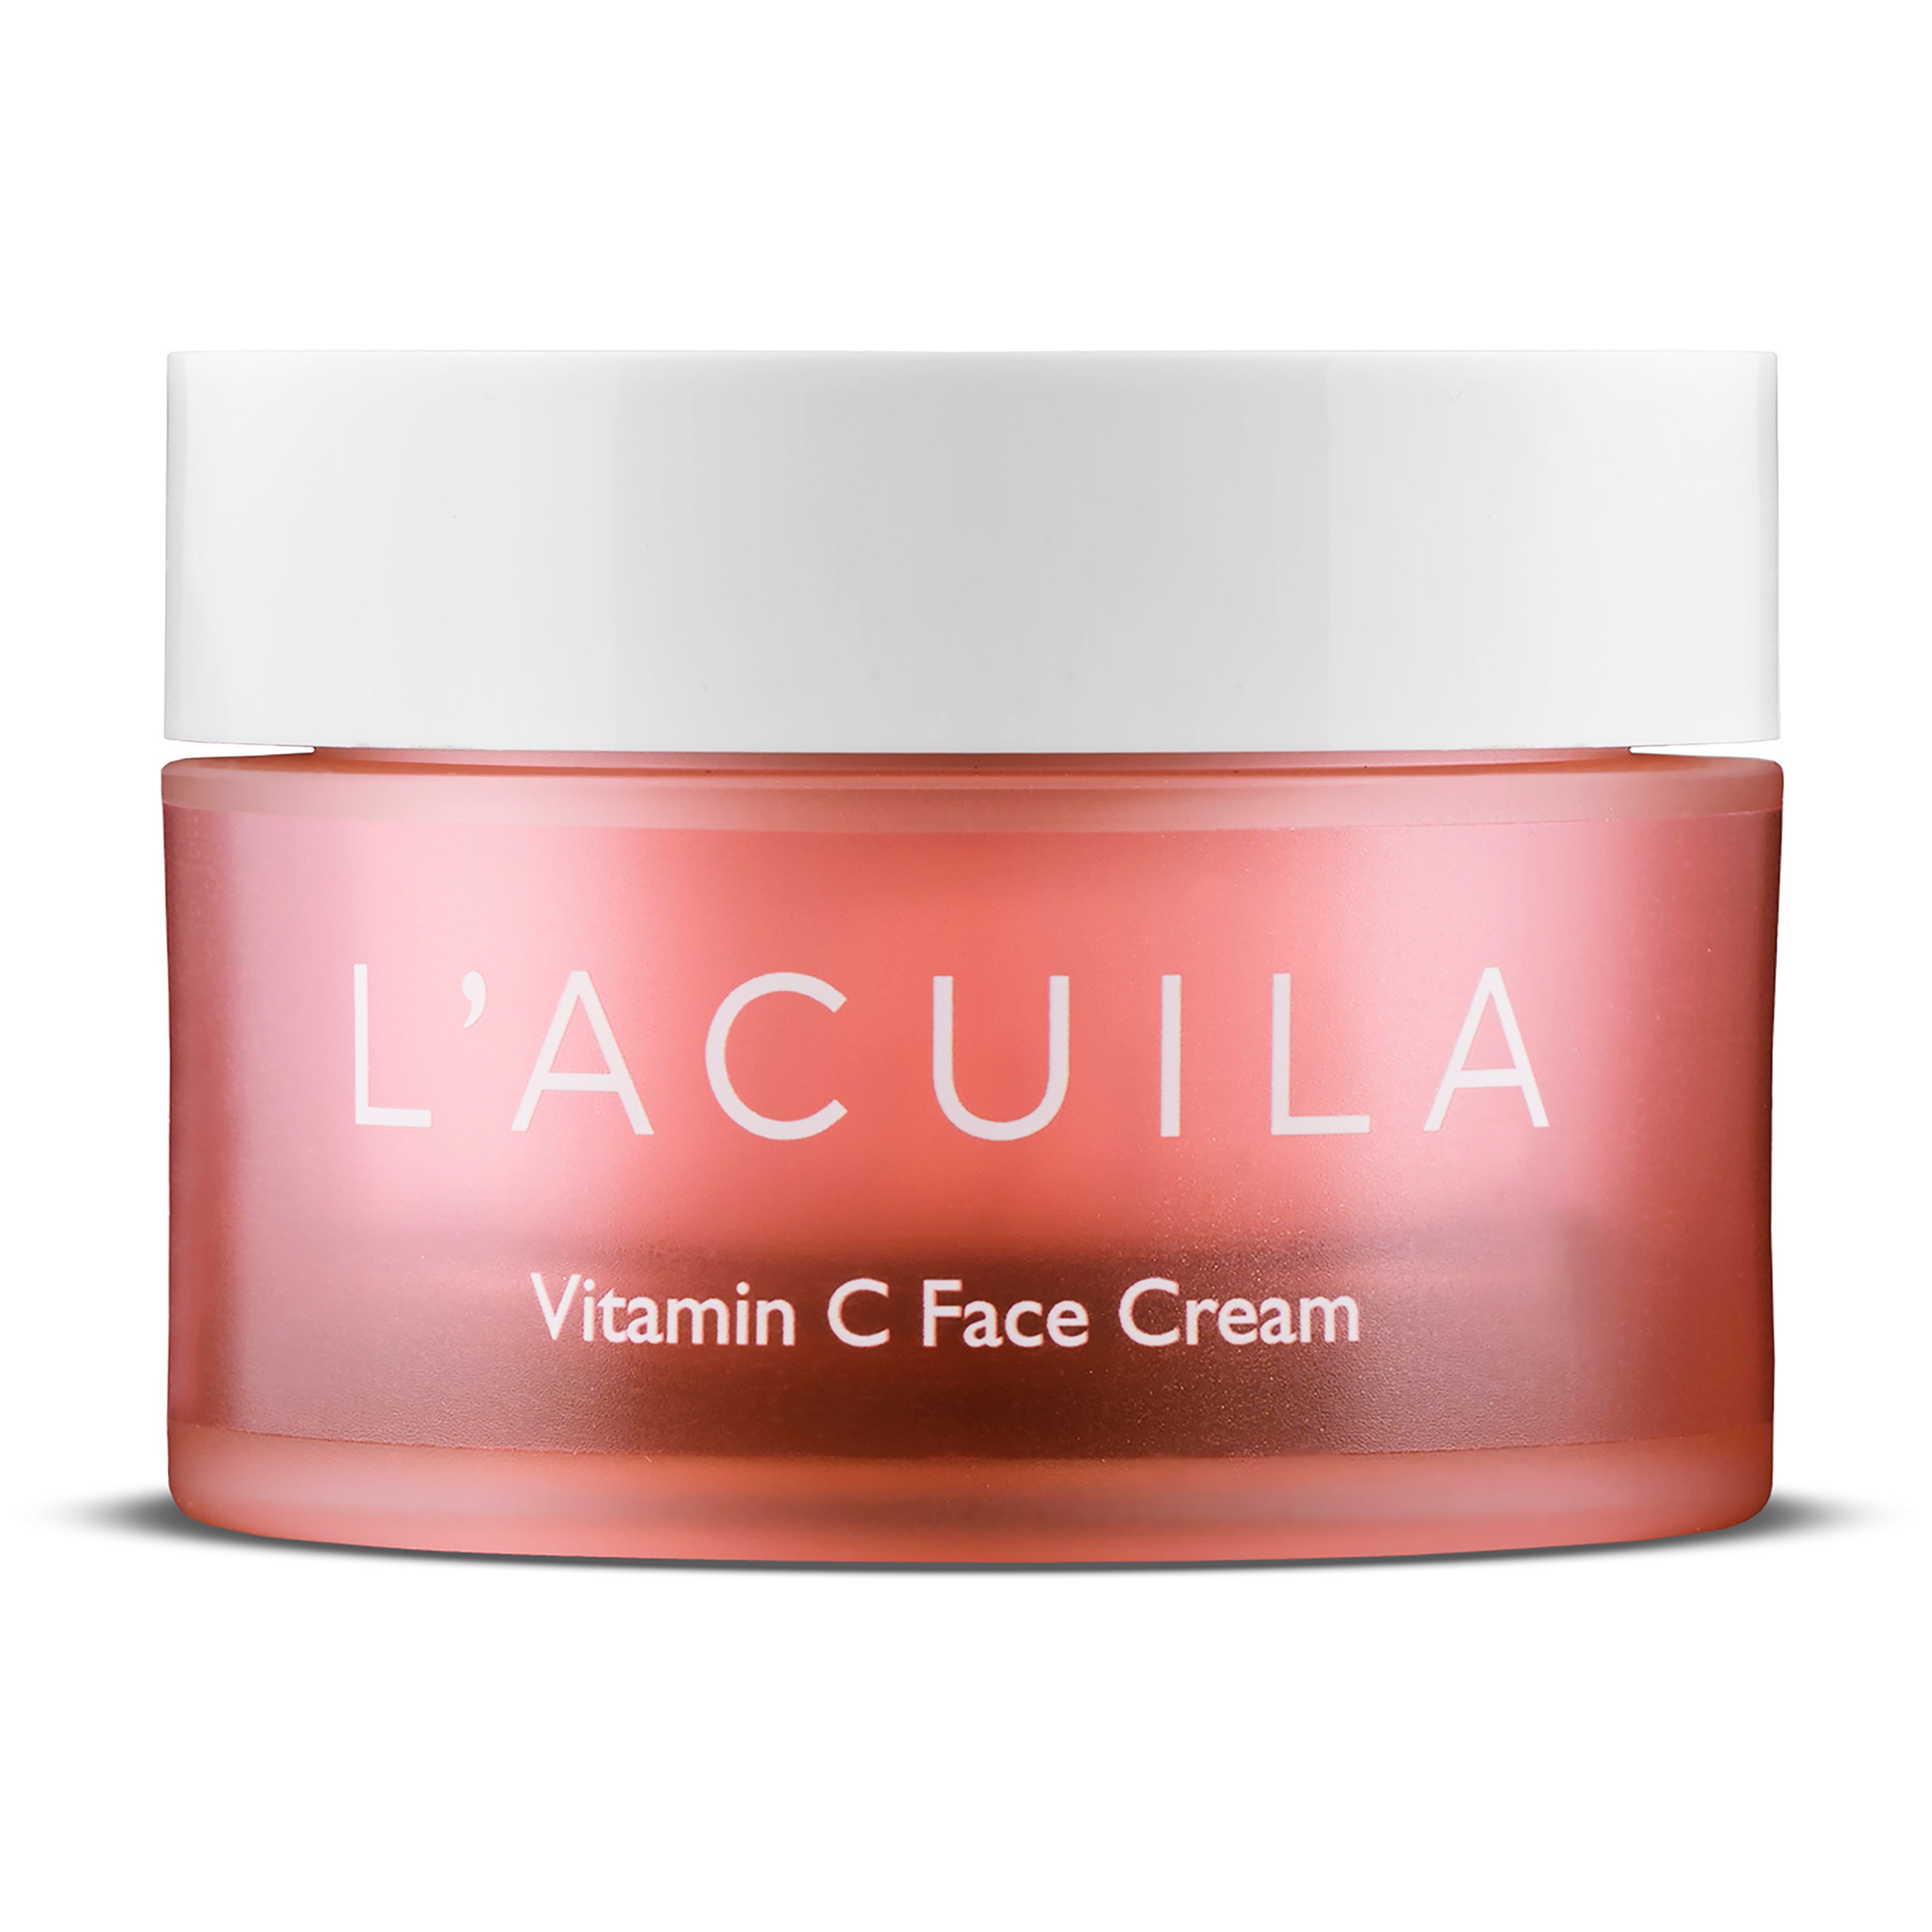 LAcuila Vitamin C Face Cream 50 ml